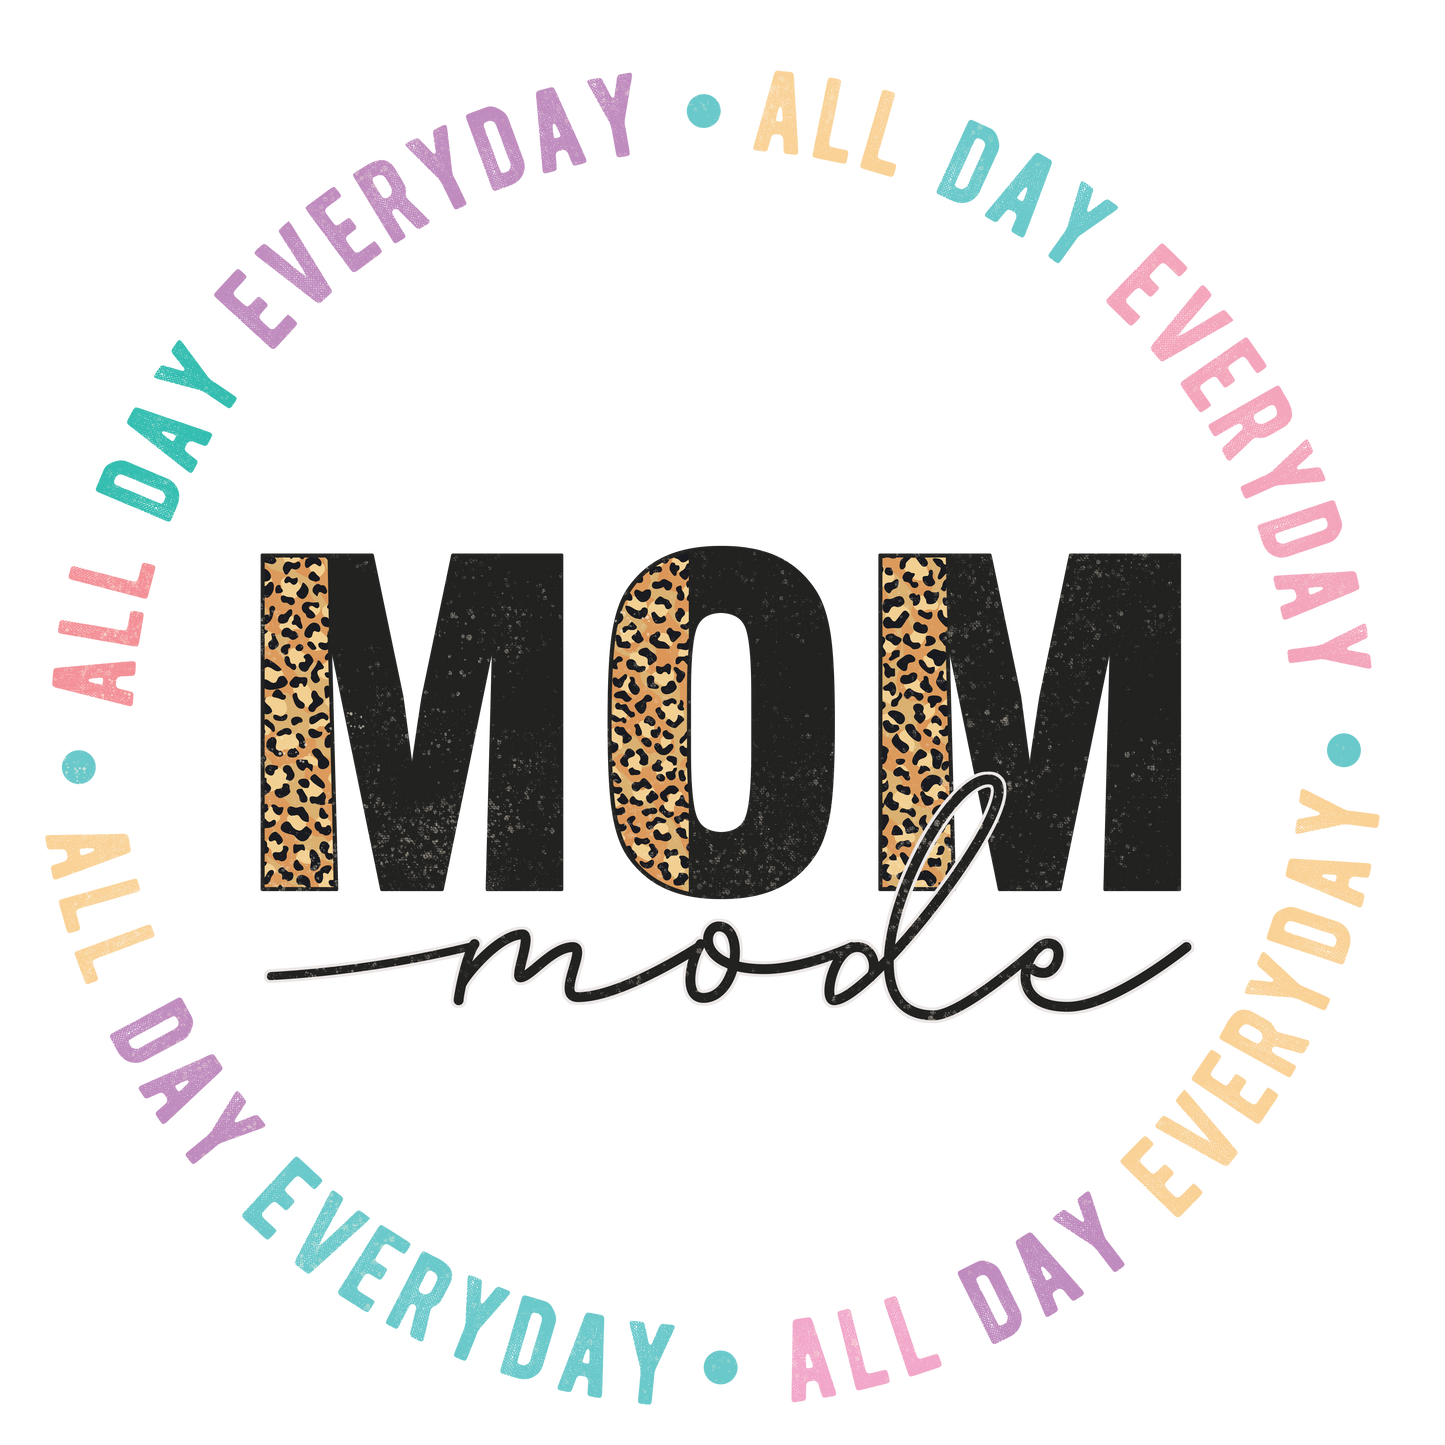 Mom Mode